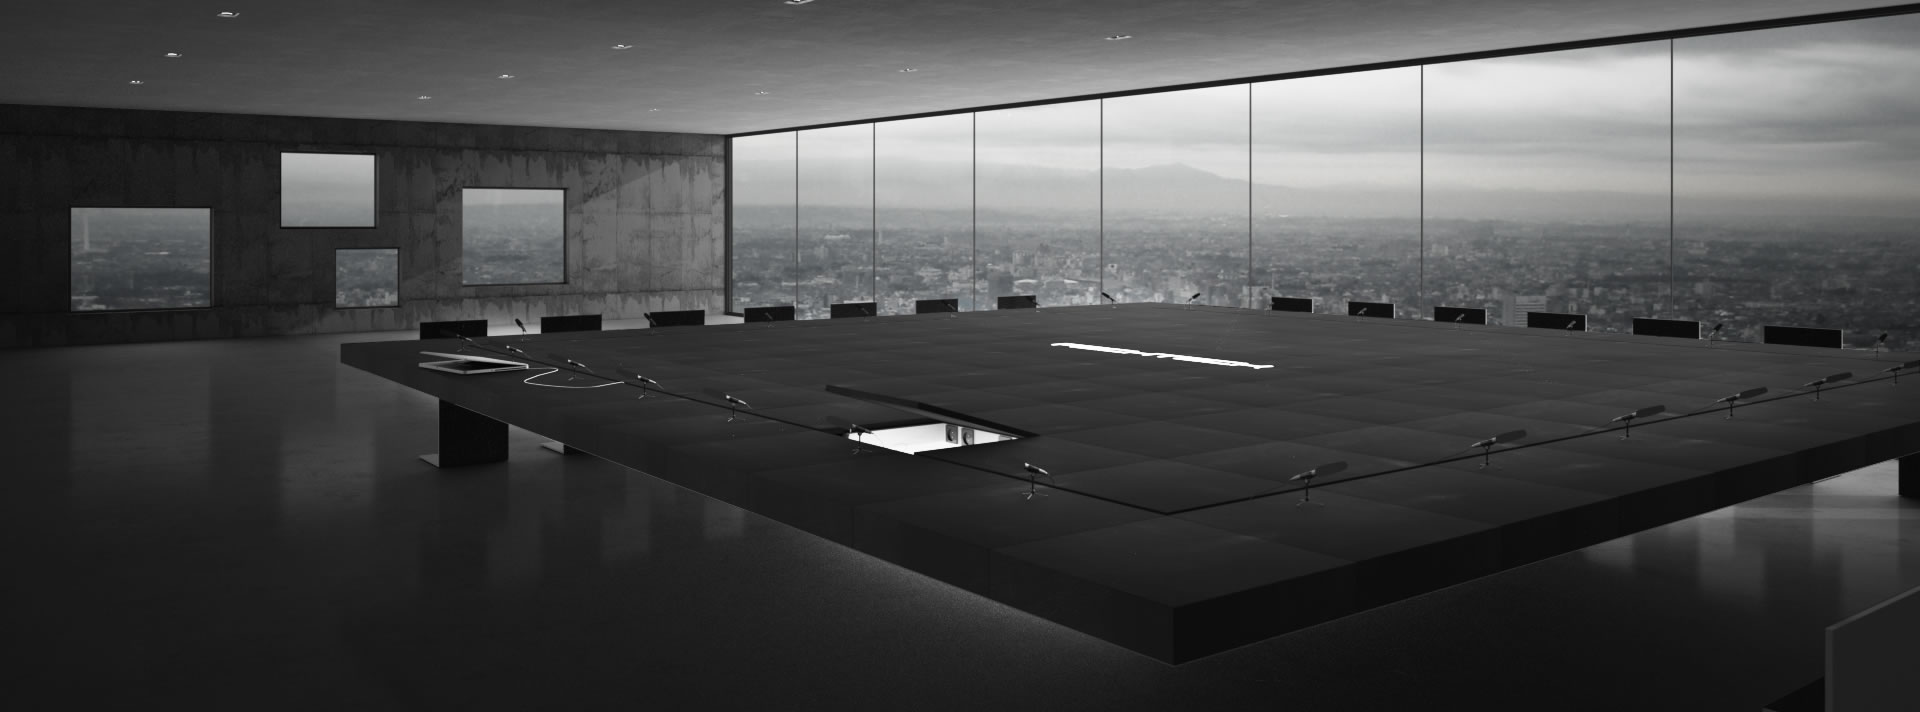 design konferenz tisch weiss schwarz puristisch edel modern luxus rechteckFELIX SCHWAKE RECHTECK